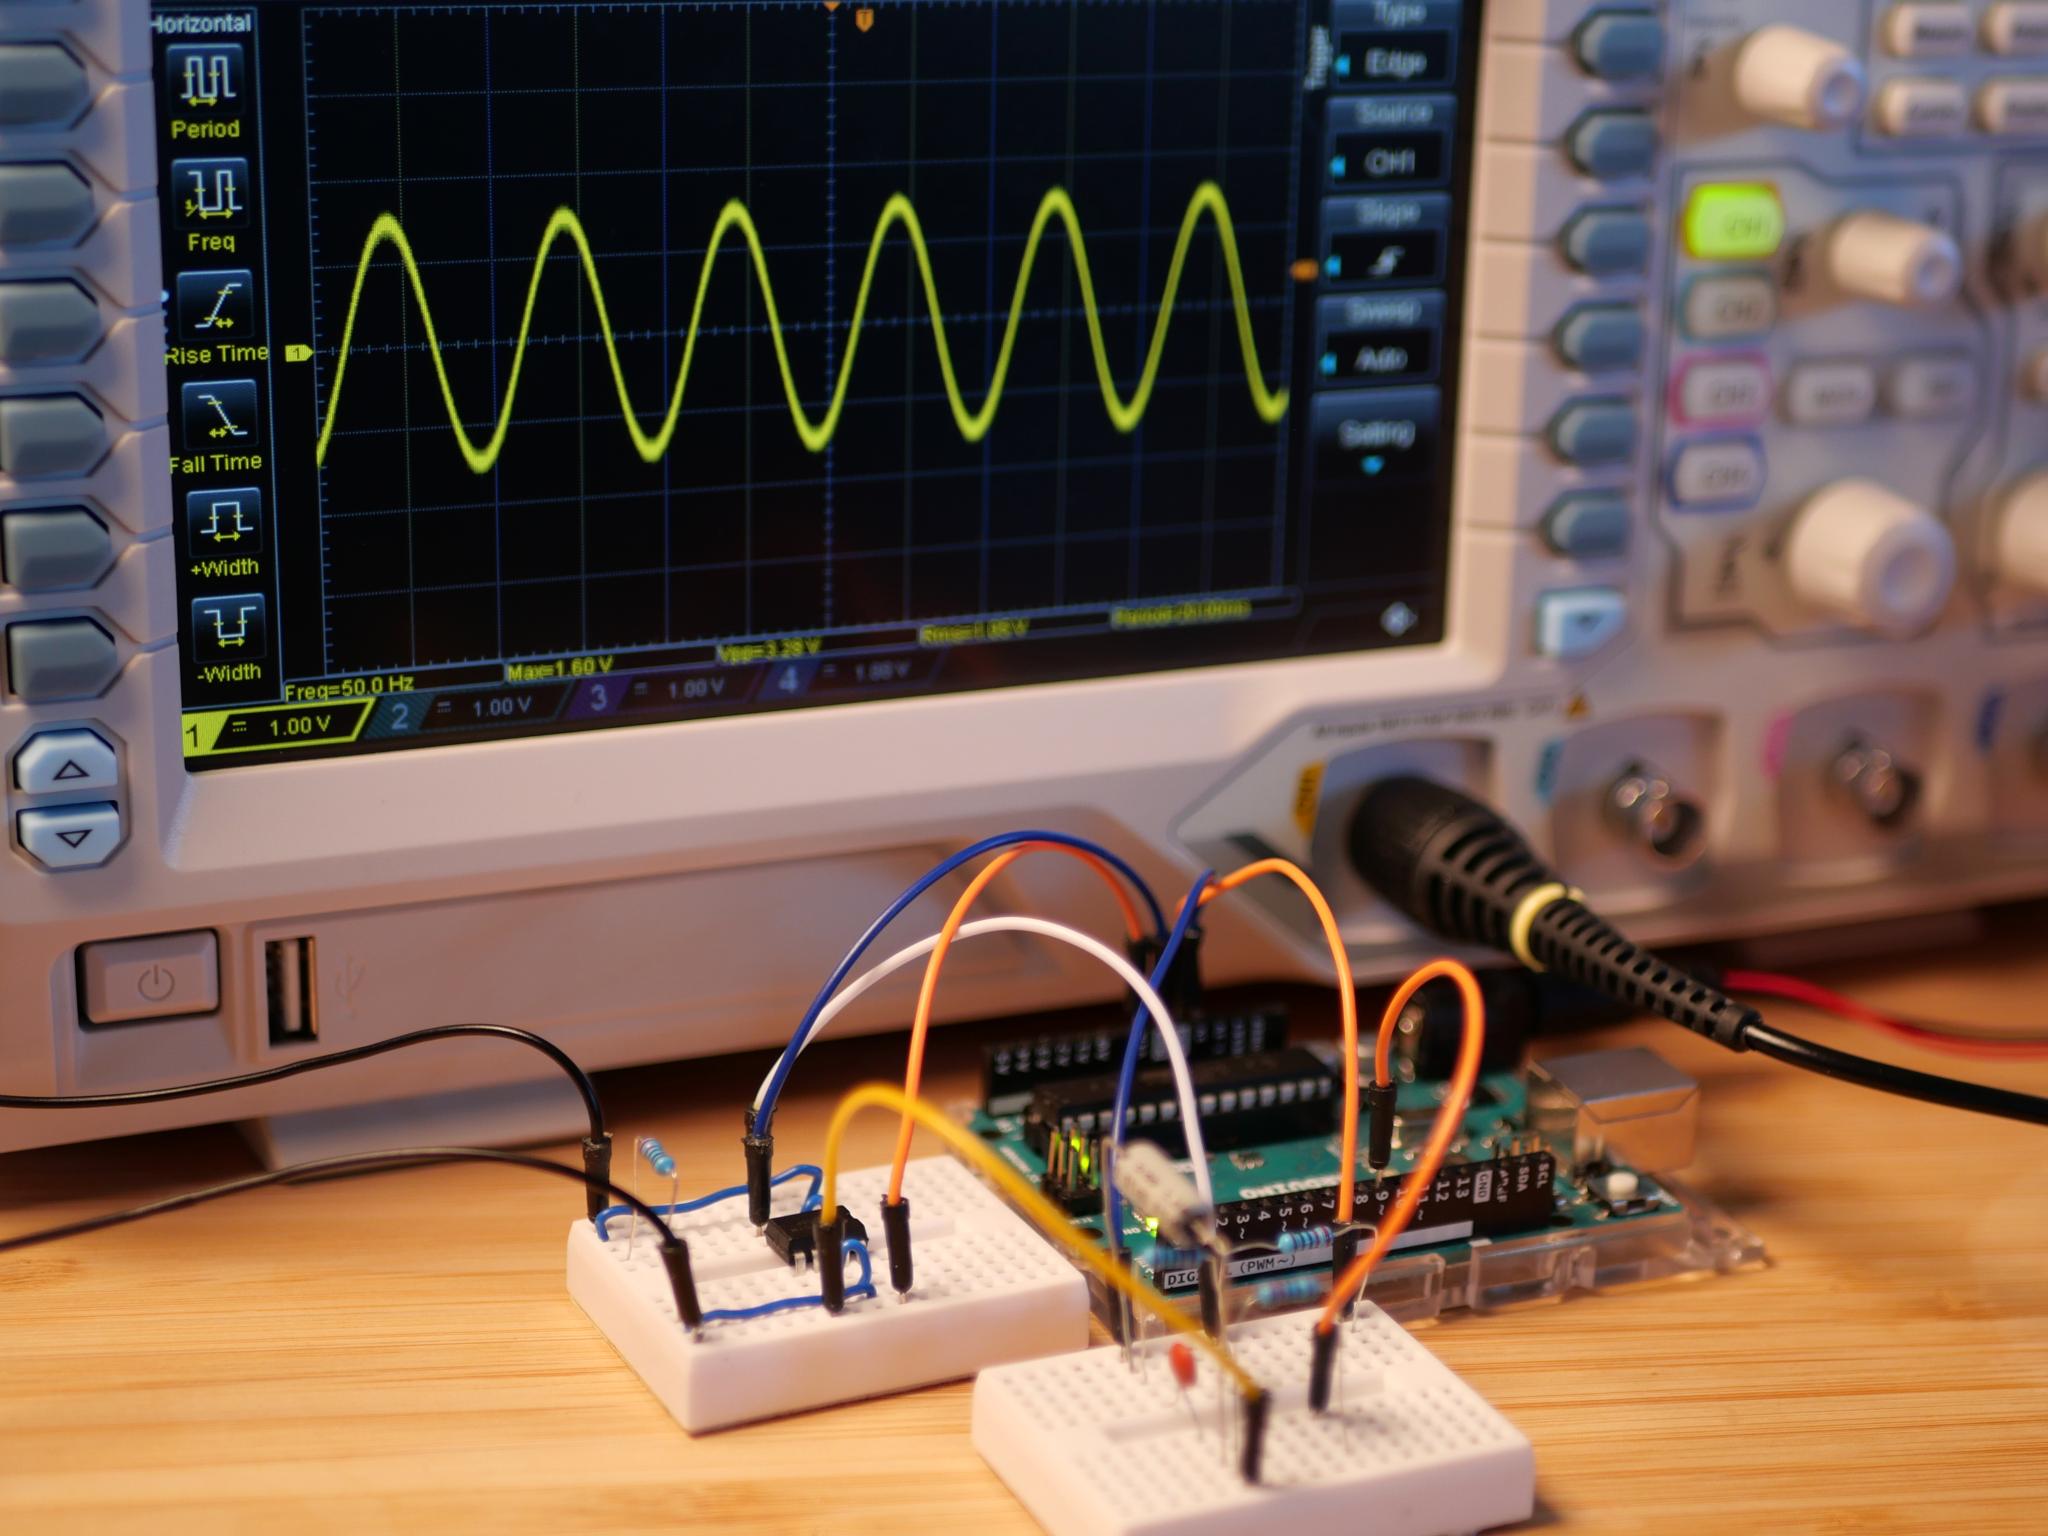 Clean sine wave signal output after adjusting the voltage range